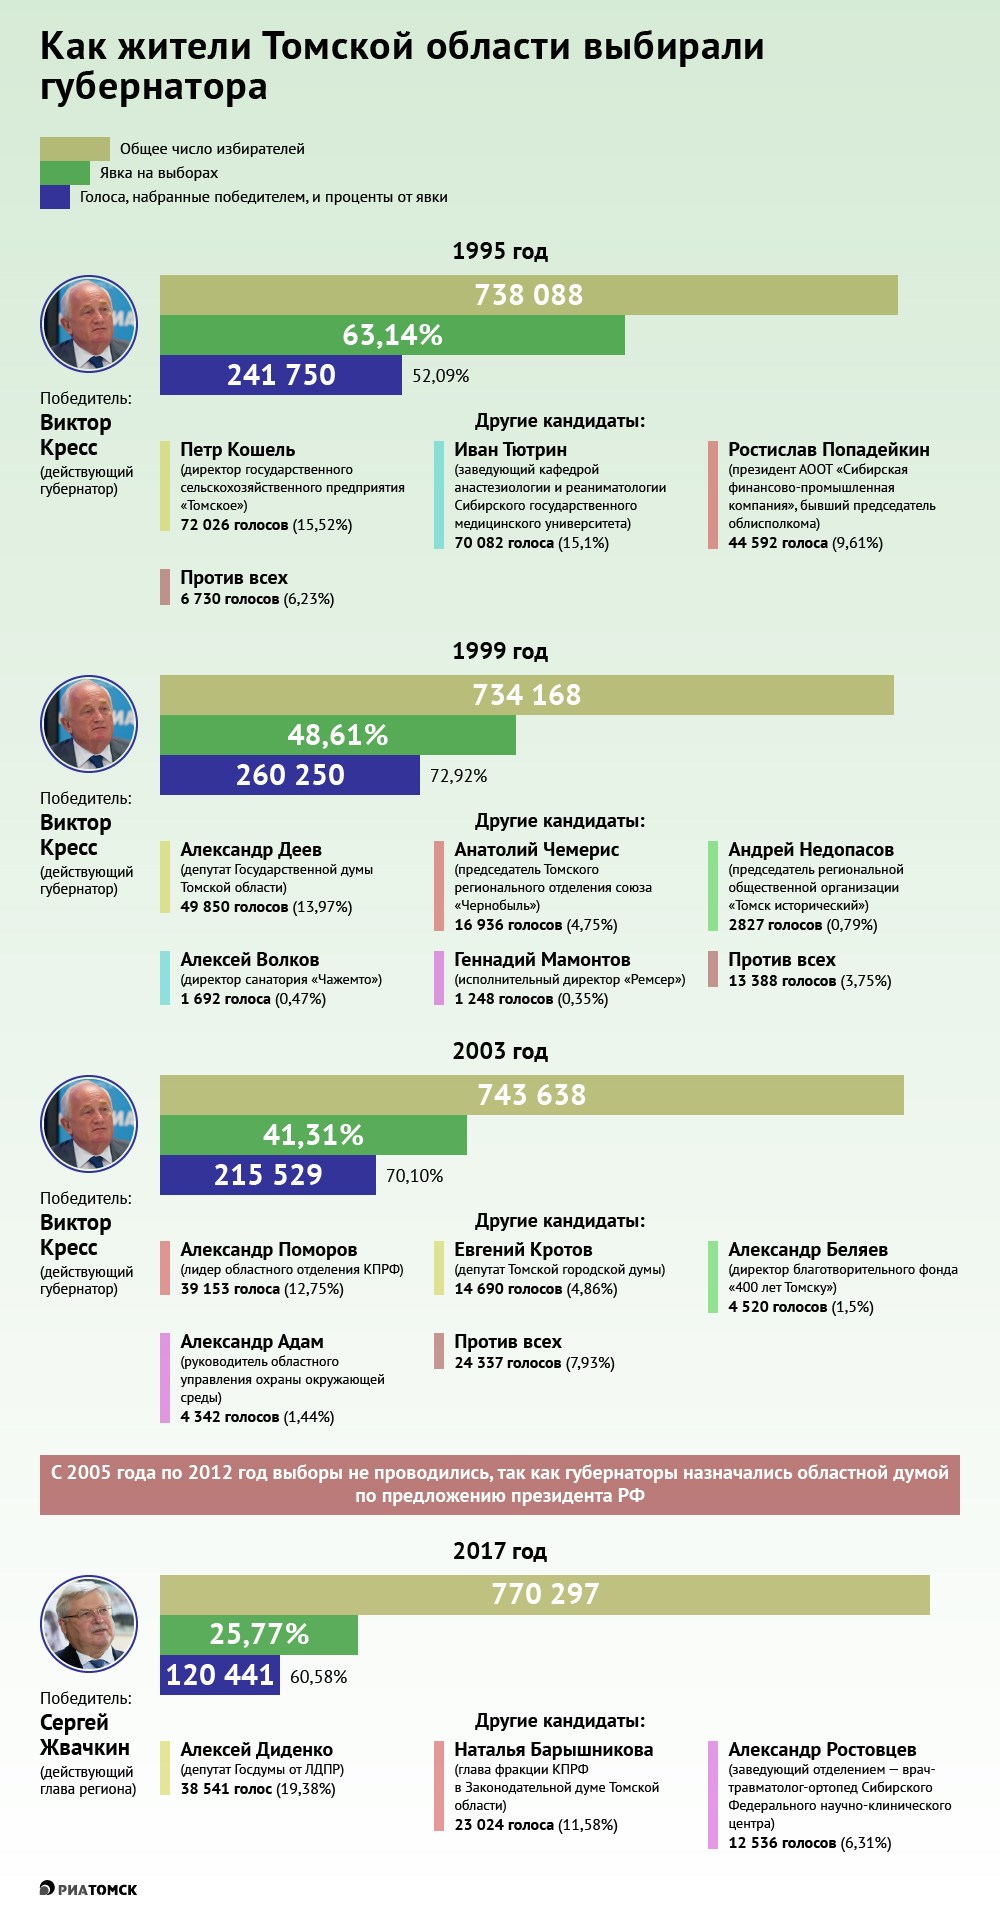 Выборы губернатора в 2022 году пройдут в Томской области в пятый раз (в 2005-2011 годах в РФ они не проводились). РИА предлагает вспомнить итоги губернаторских выборов прошлых лет. Спойлер: самая высокая явка была в 1995-м, а самое большое число голосов победитель набрал в 1999-м.